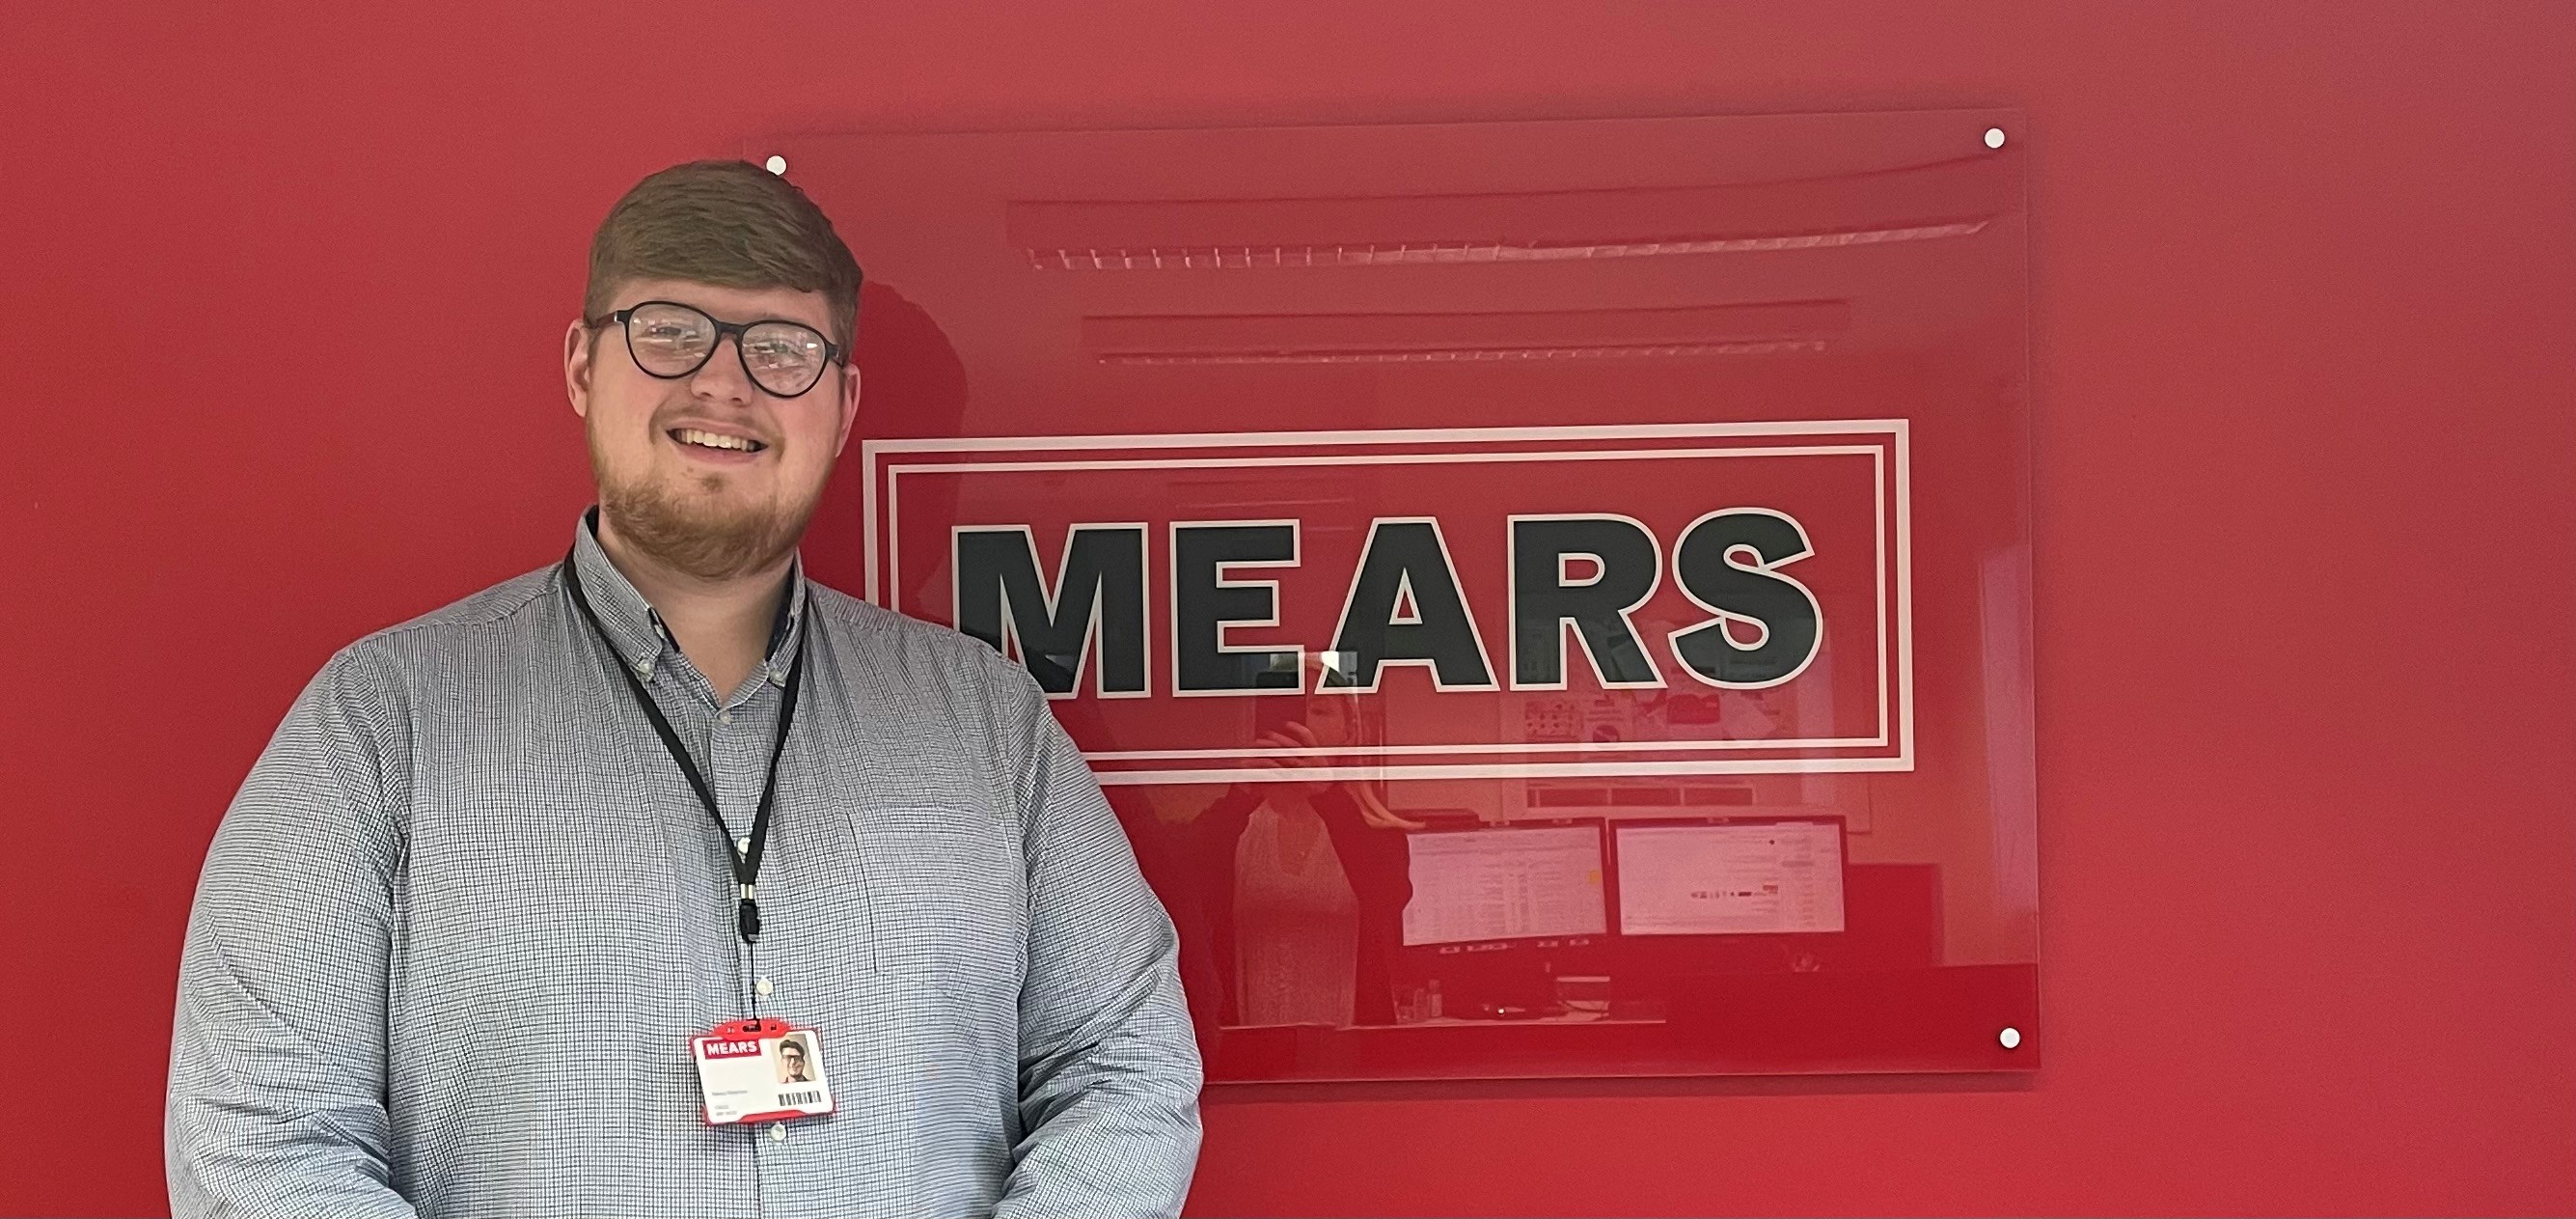 Mears Group focuses on growing North Lanarkshire workforce